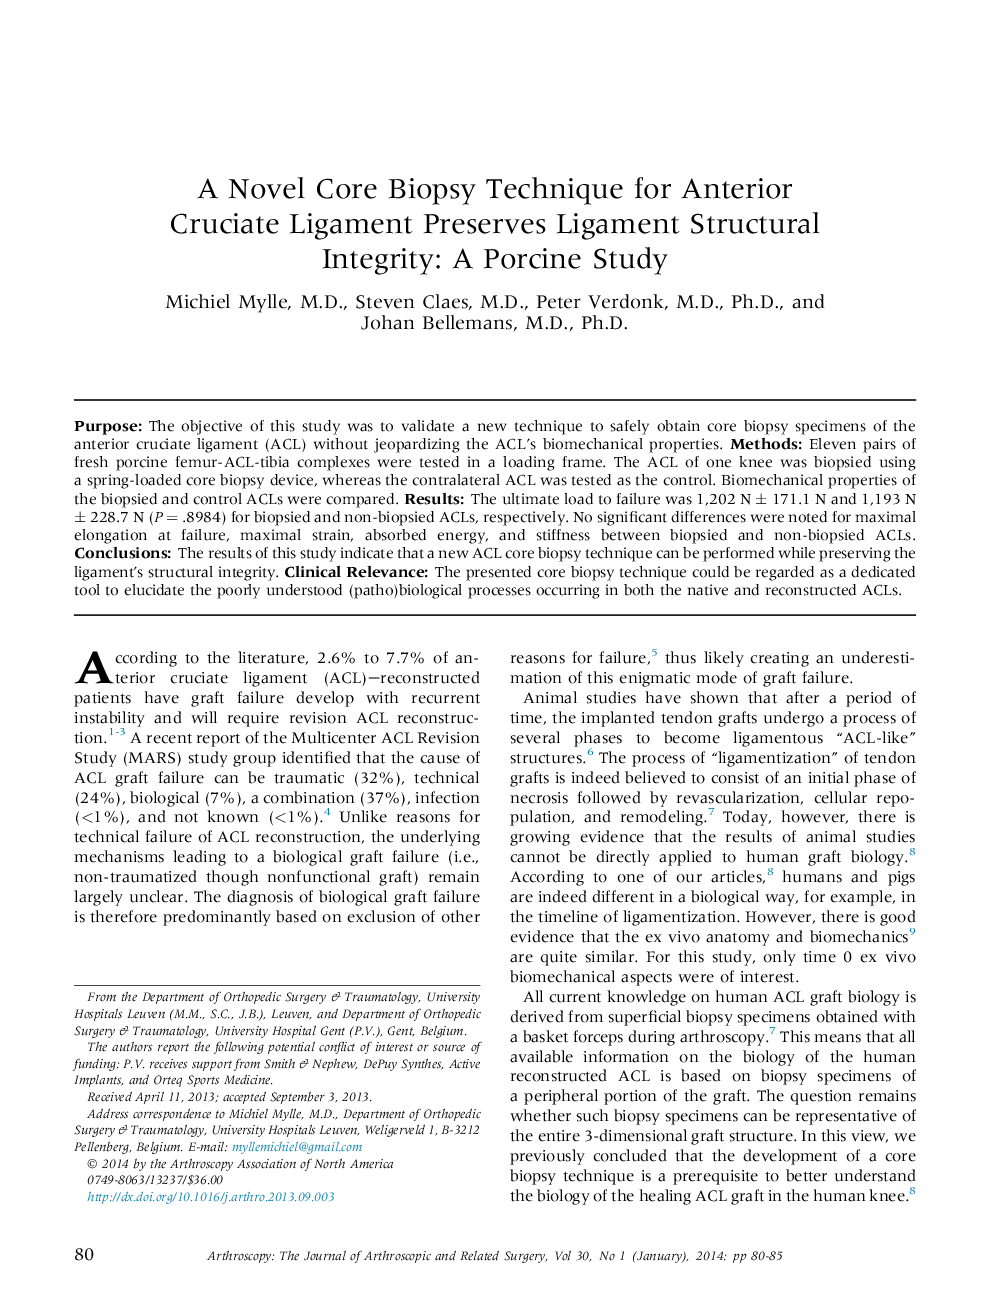 یک تکنیک بیوپسی هسته ای ریشه برای سفتی قدامی قاعده حفظ یکپارچگی سازه ای انسانی: مطالعه خوکی 